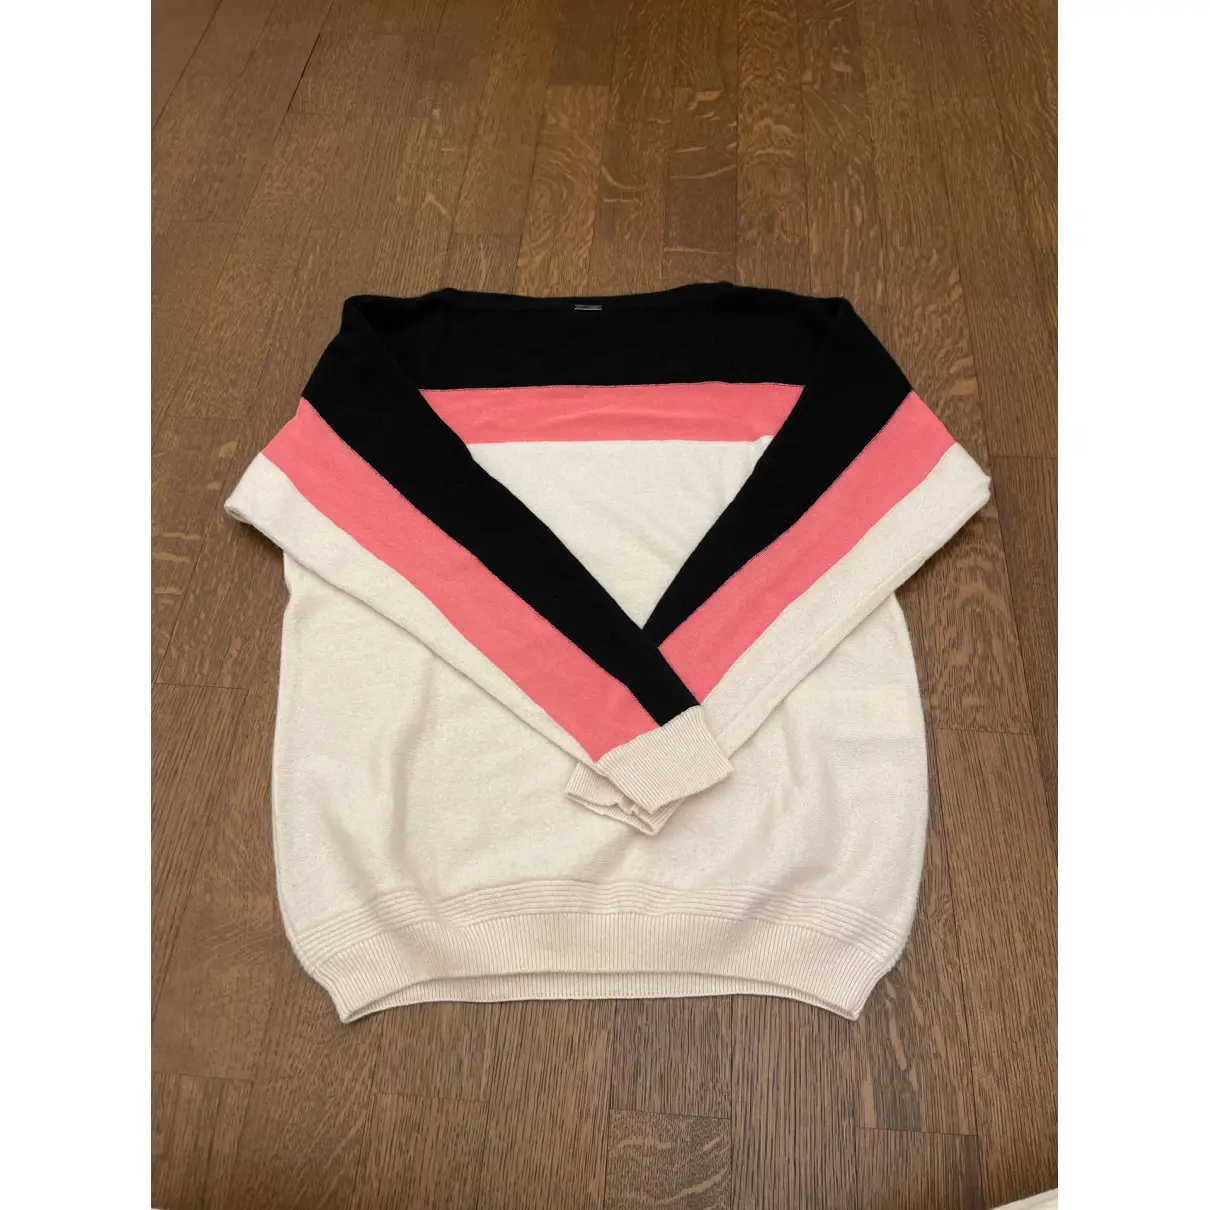 Buy Fendi Cashmere jumper online